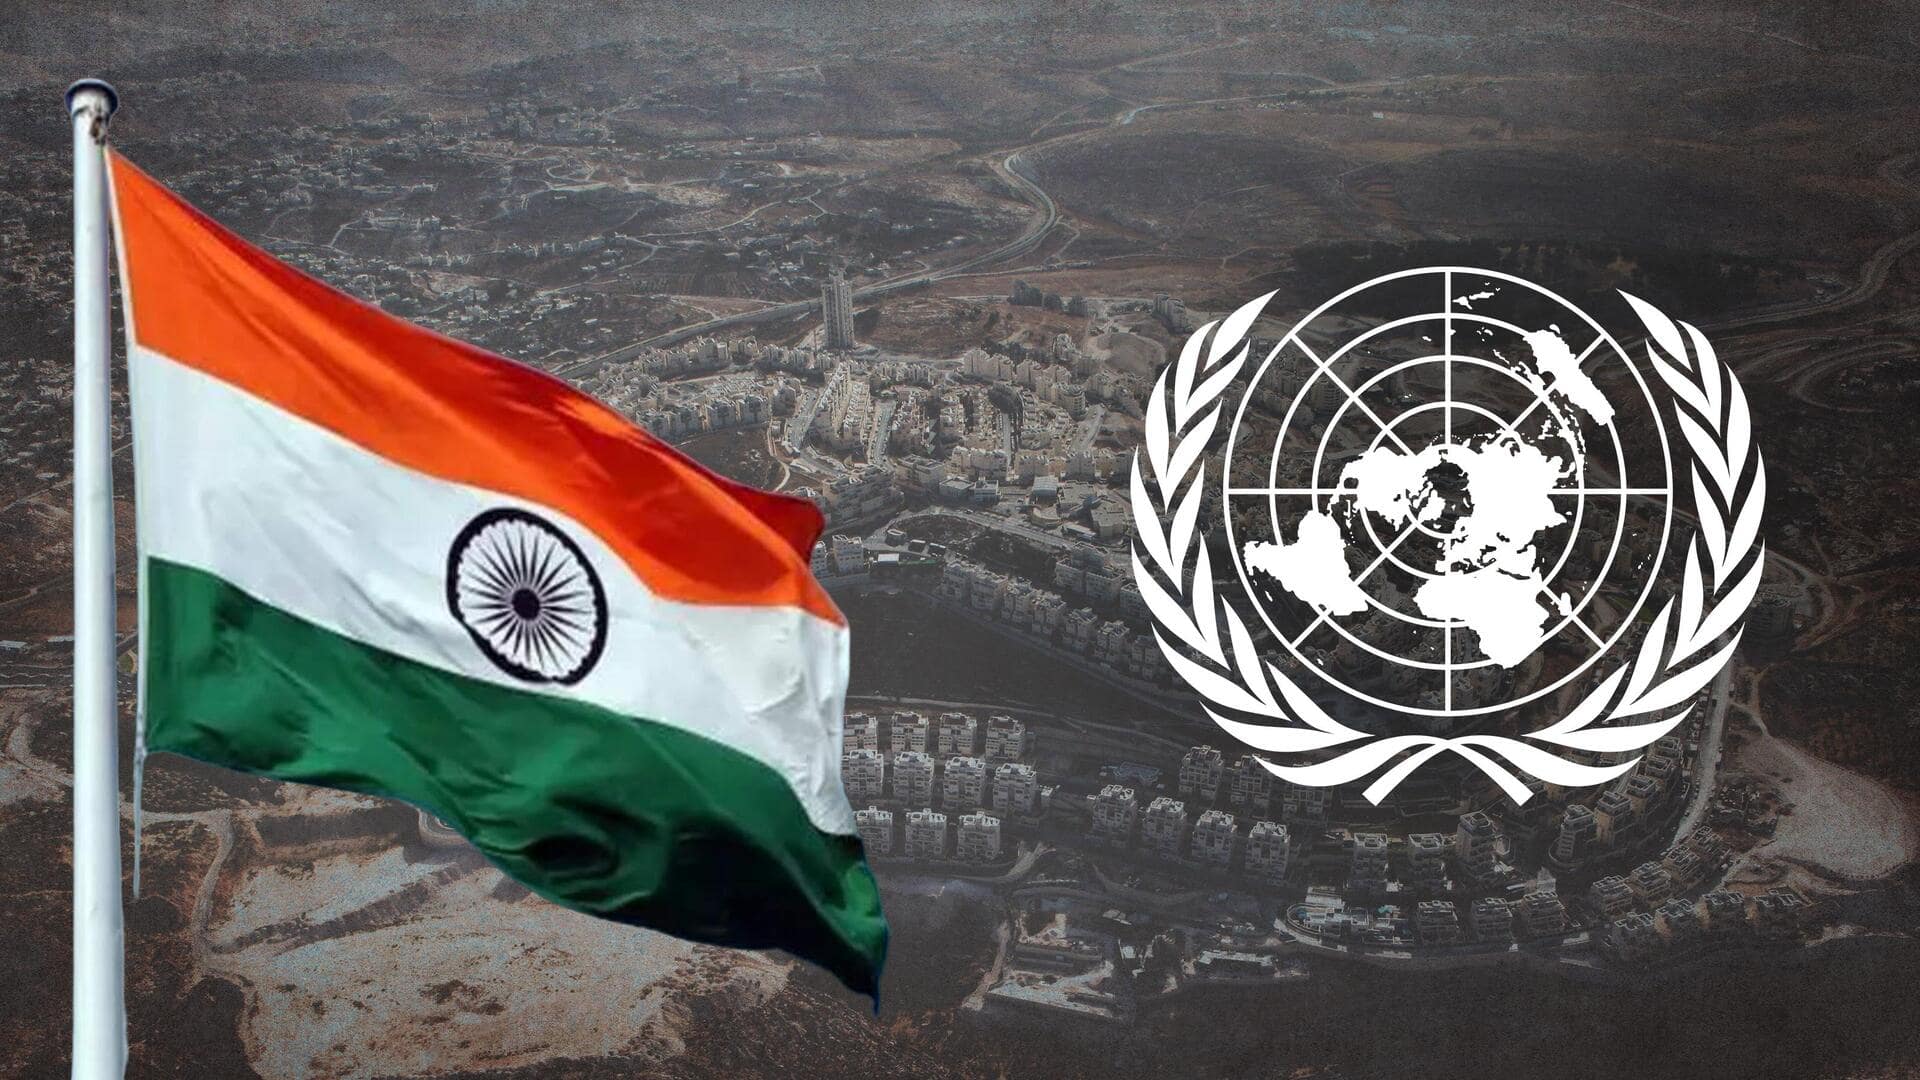 फिलिस्तीनी क्षेत्र में इजरायली बस्तियों के खिलाफ UN में प्रस्ताव, भारत ने पक्ष में किया मतदान